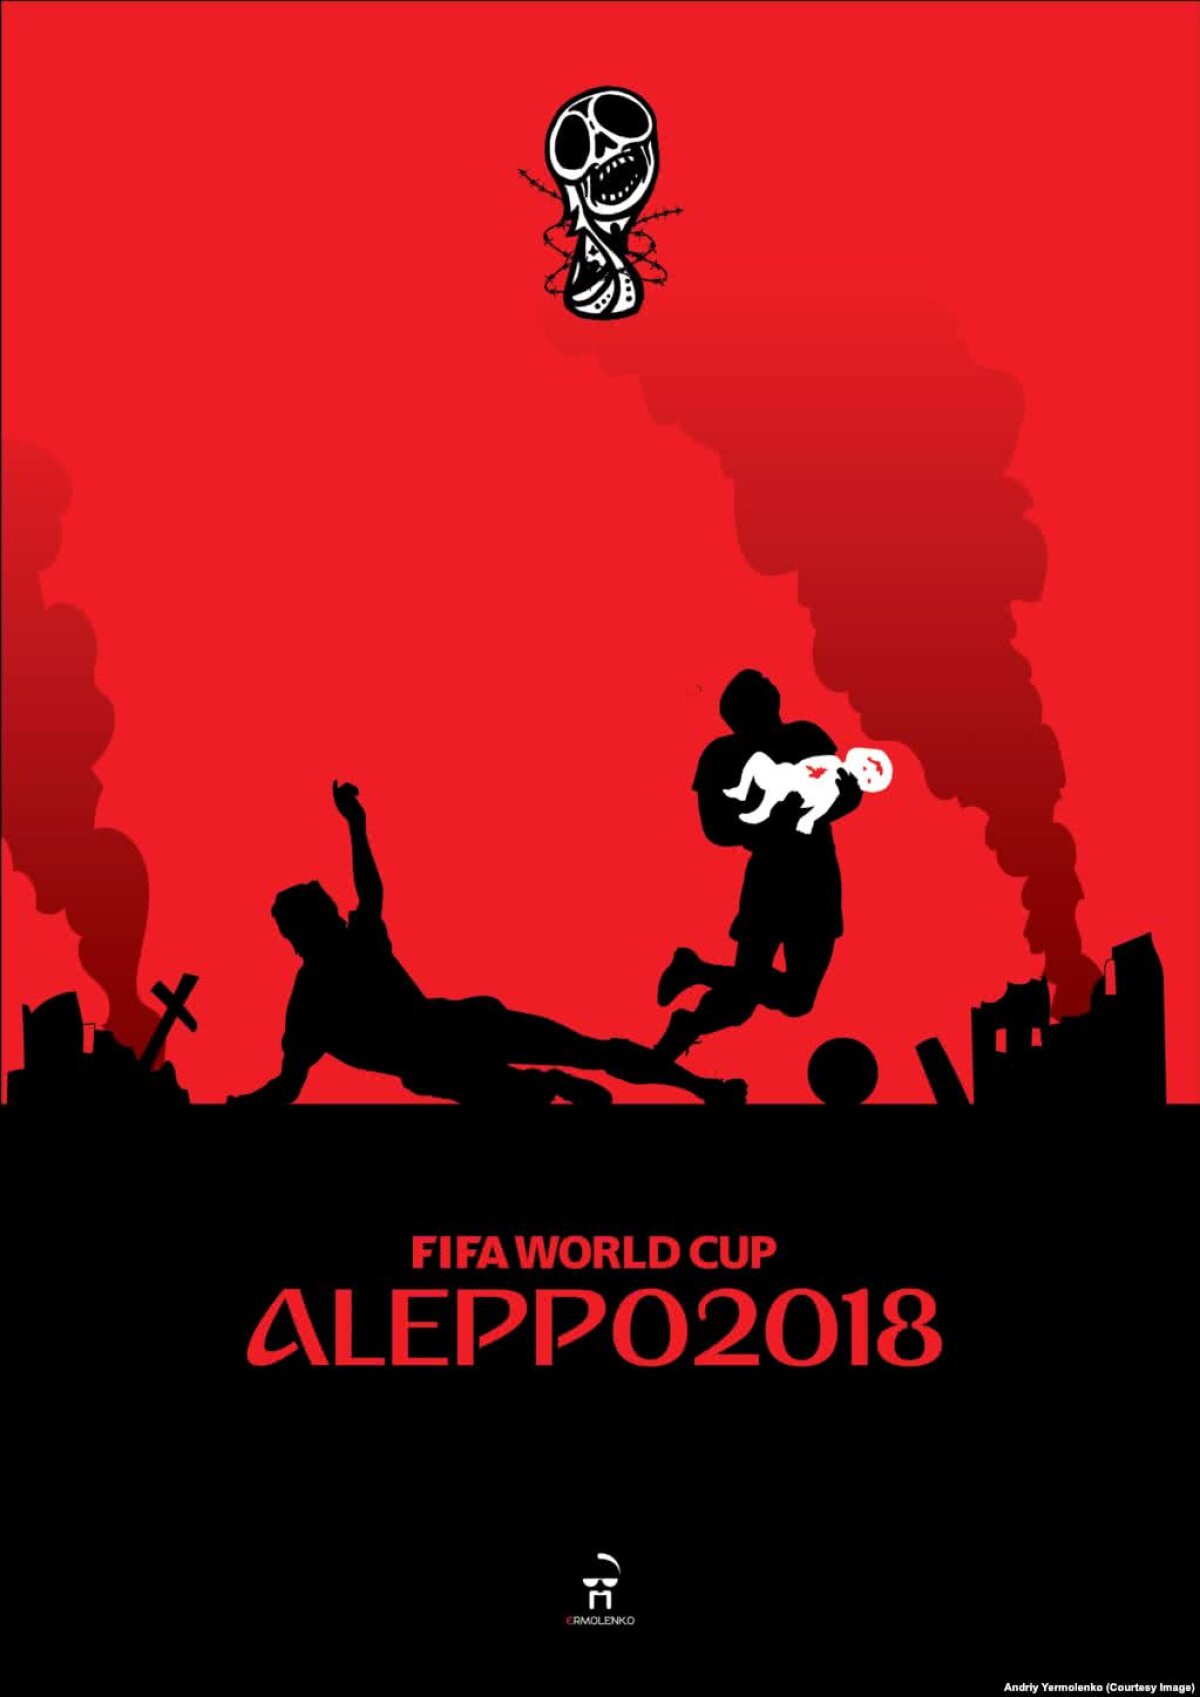 GALERIE FOTO "Fotbal înecat în sânge" » Imaginile dure create de un artist despre crimele regimului lui Vladimir Putin: "Nu vă uitați la Mondial, acoperă un regim terorist" 